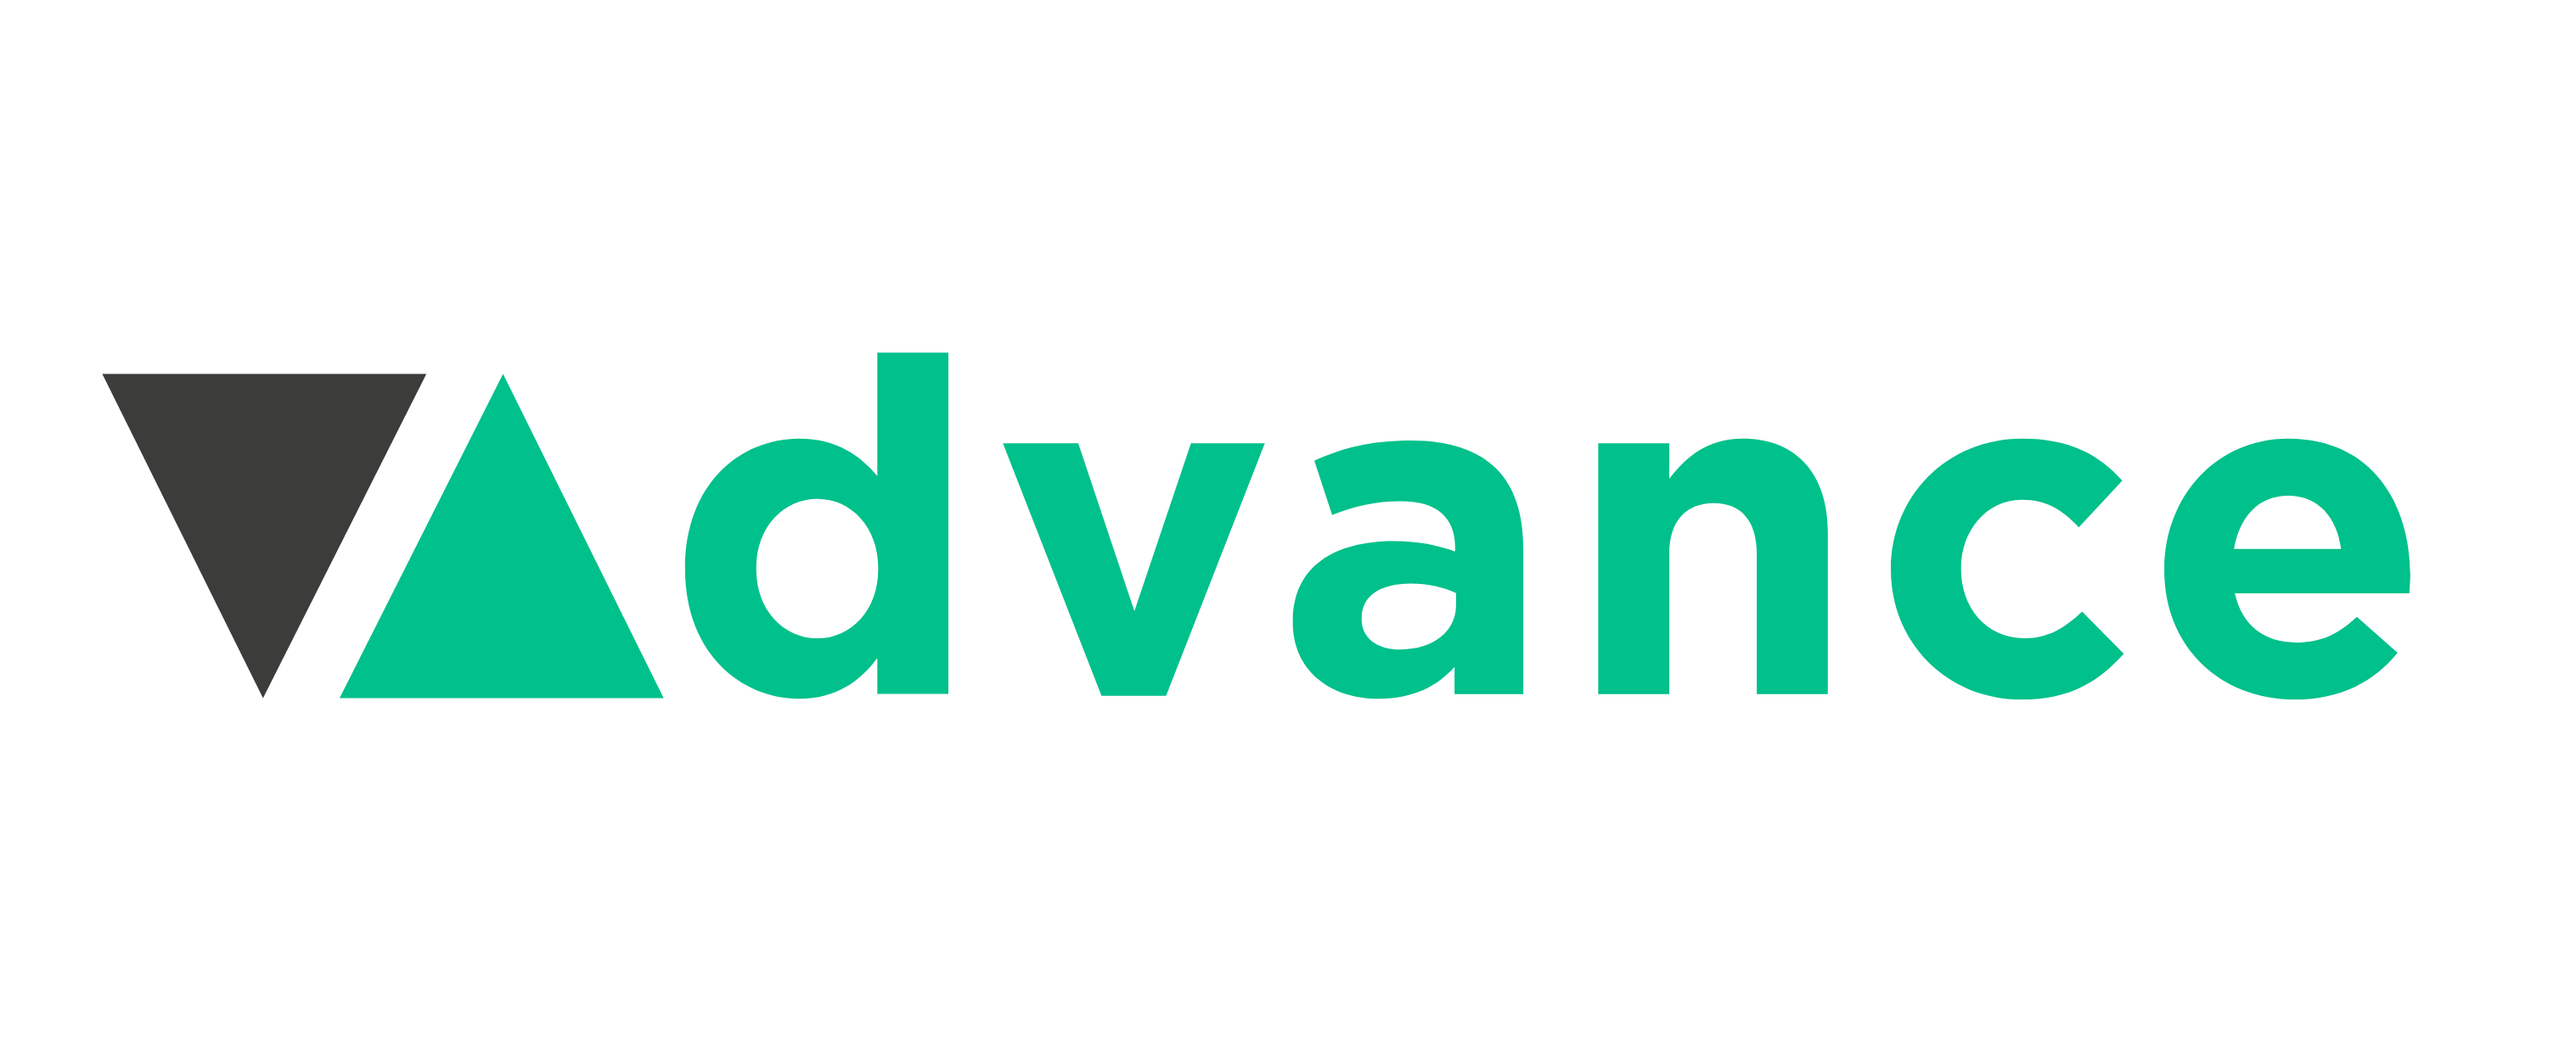 logo advance